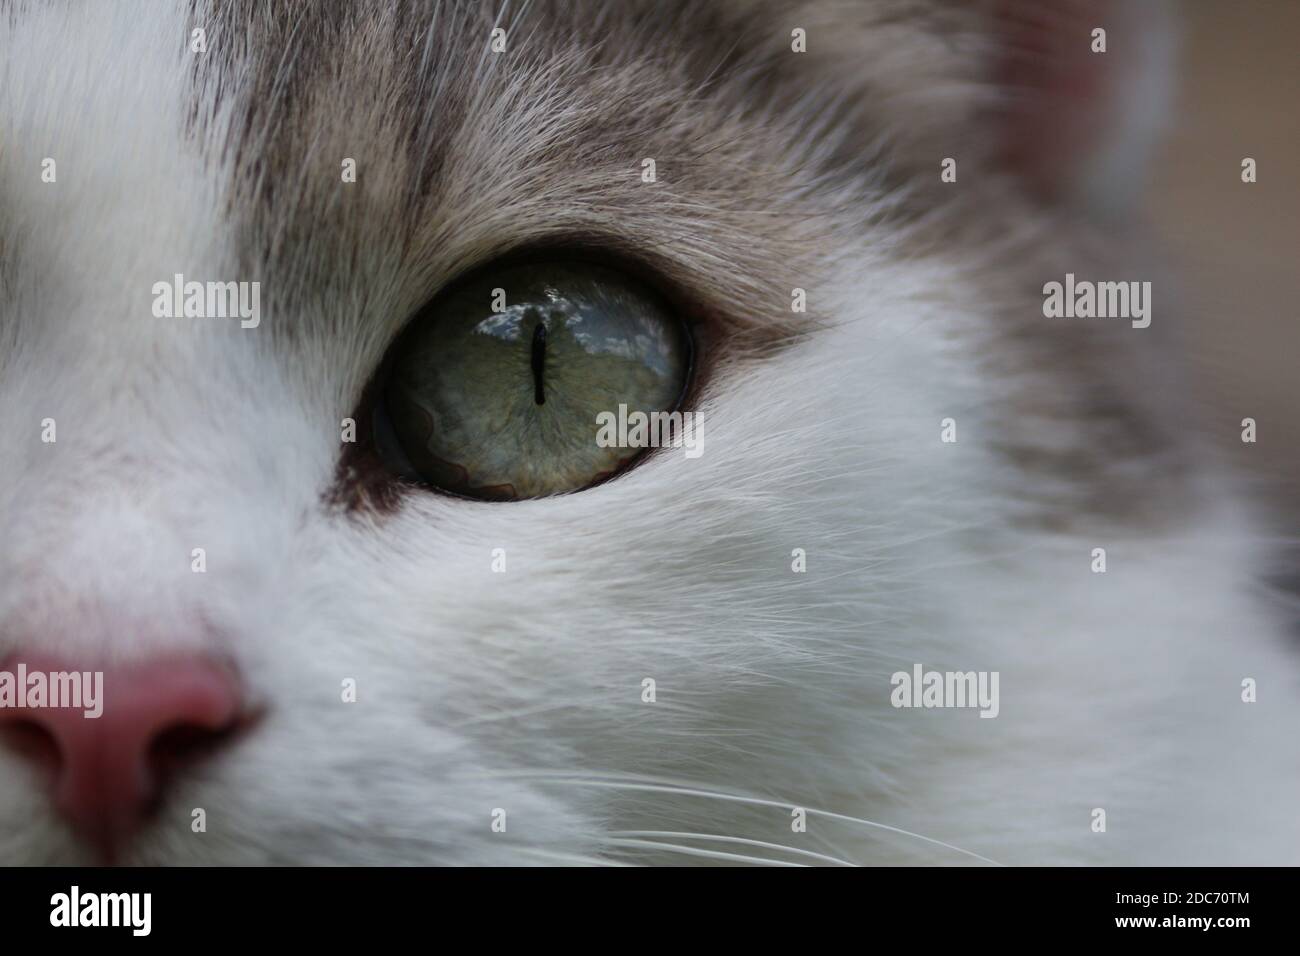 Ojo de gato verde de cerca. Un gato gris con ojos verdes y una nariz rosada. El cielo con nubes se refleja en el ojo del gato. Foto de stock